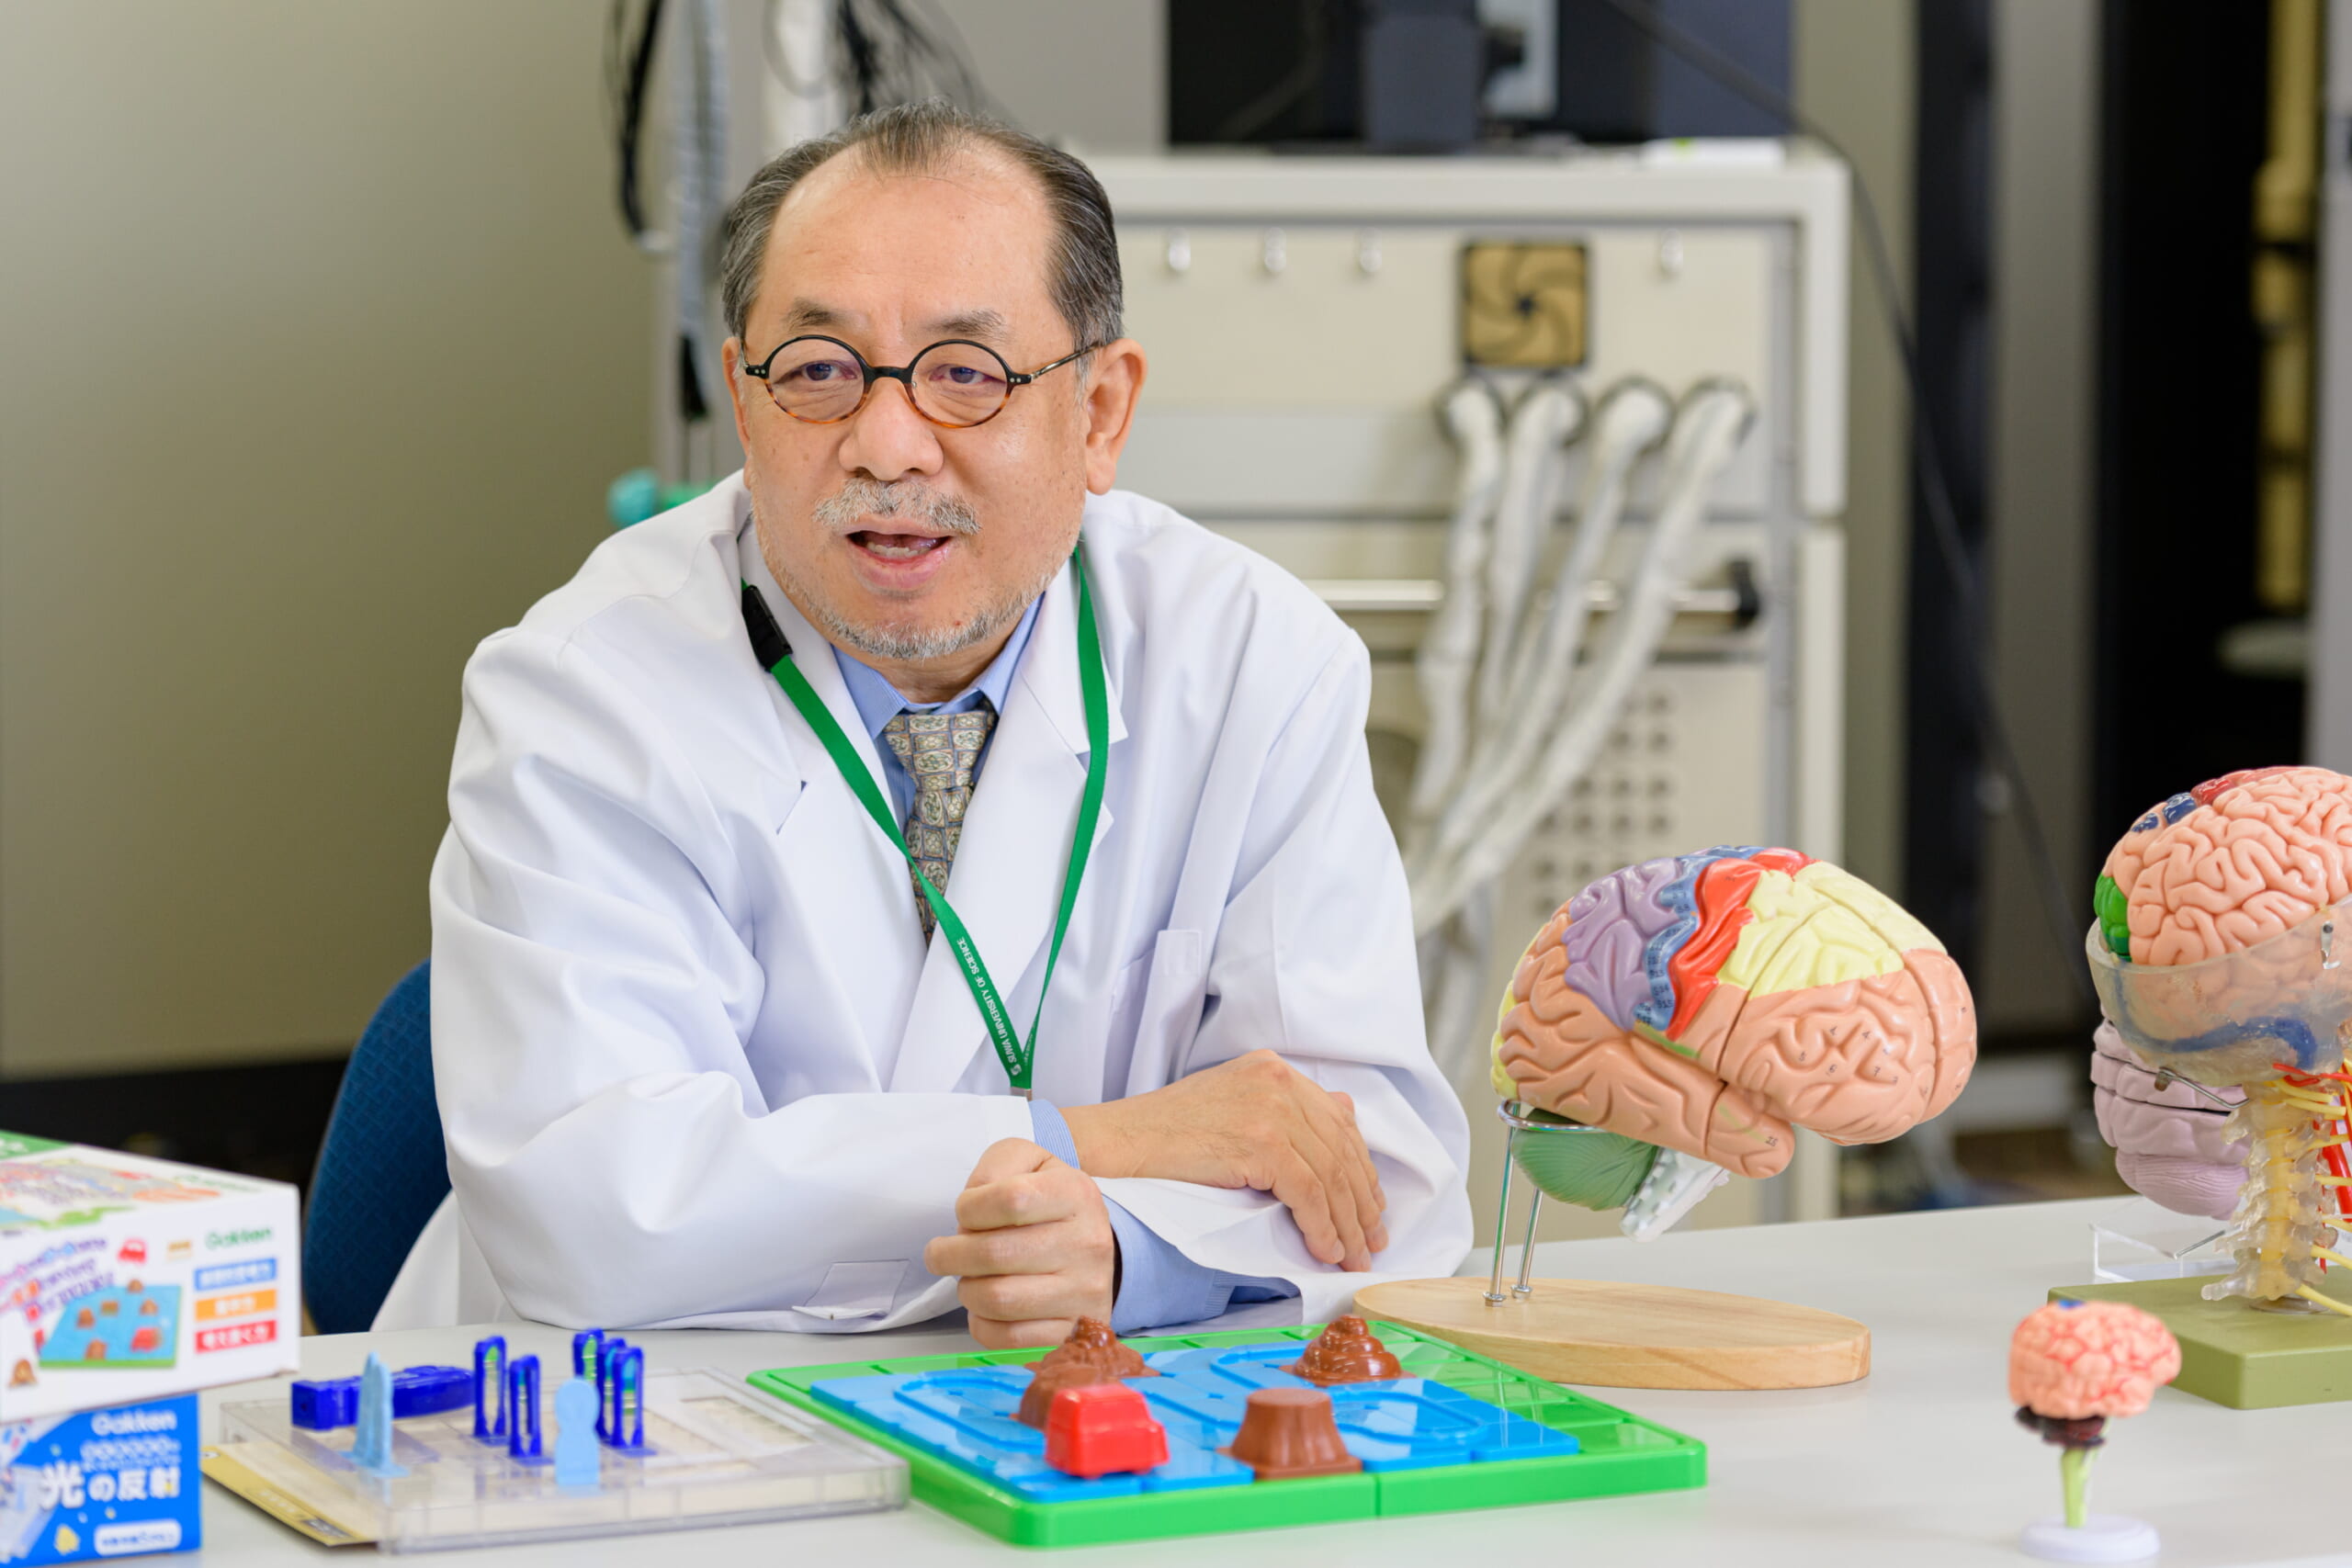 脳科学者・篠原菊紀教授もオススメ 「頭を使うことは楽しい」と“脳が認識する”知育玩具